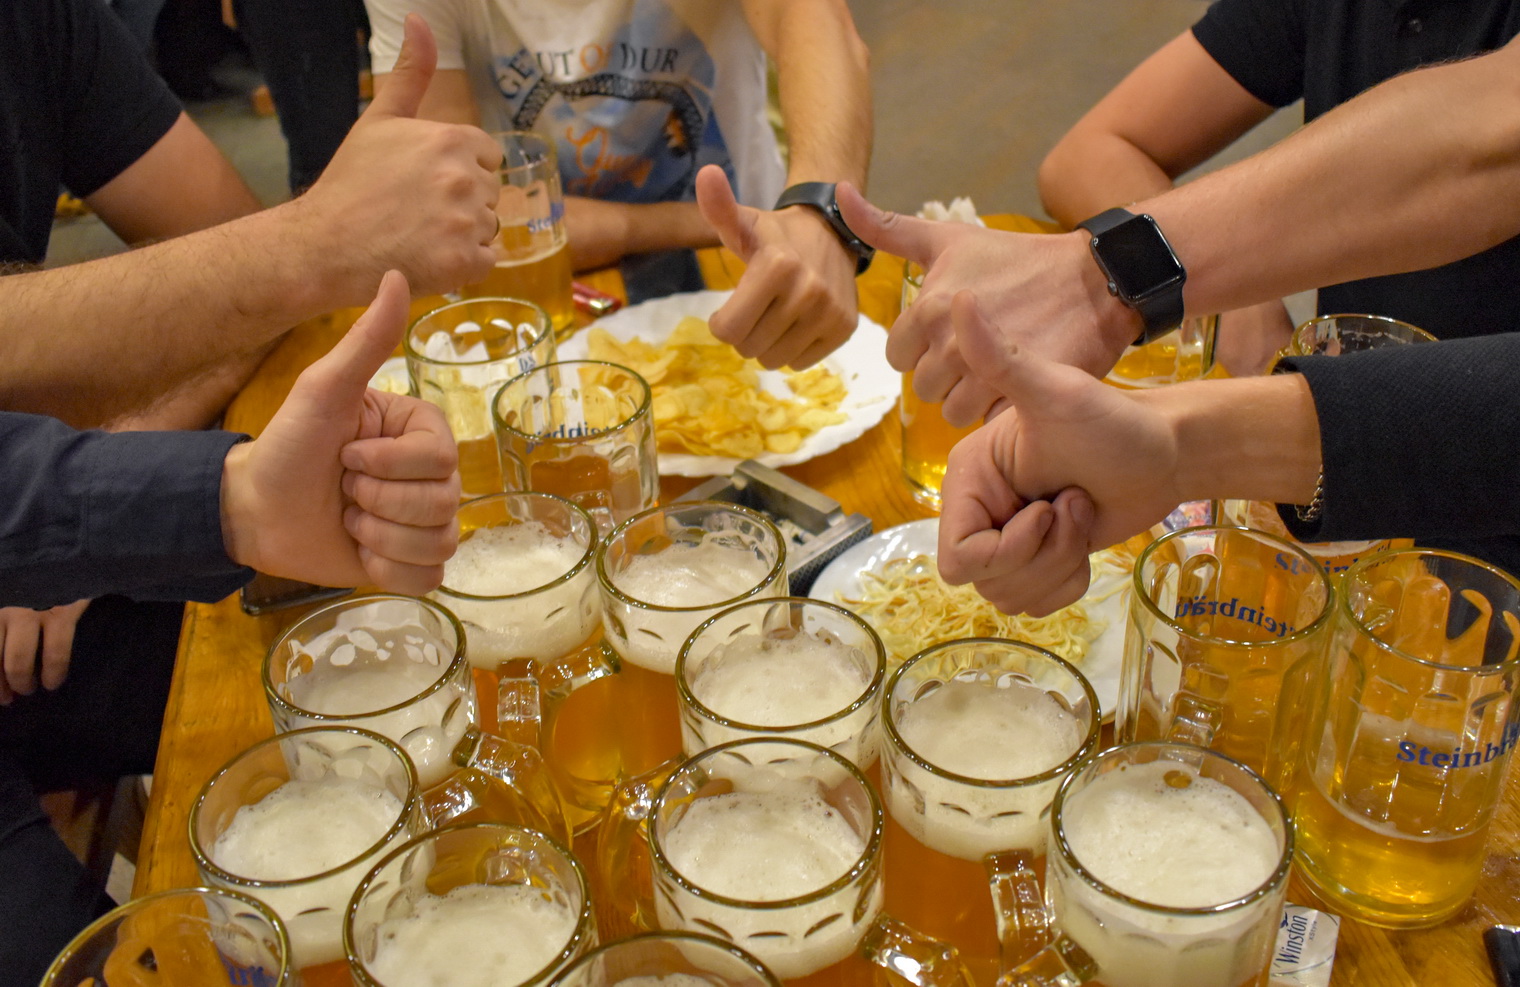 Сосиски, пиво, рок-н-ролл! Компания «Штайнброй» провела в Бишкеке свой «Октоберфест»